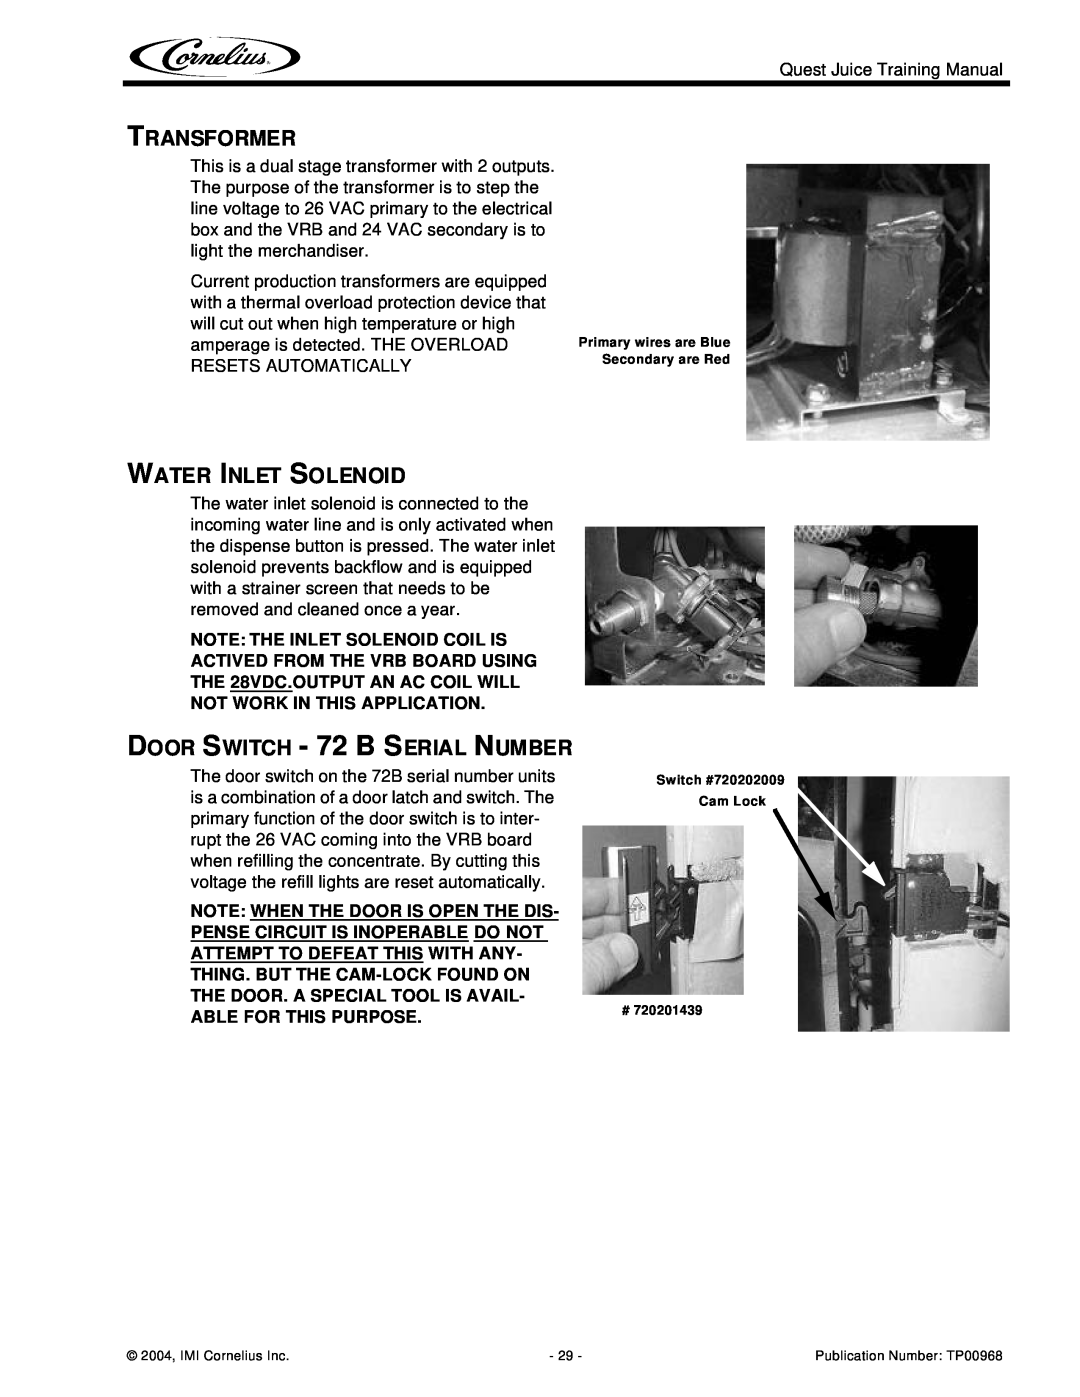 Cornelius 2 Flavor manual Transformer, Water Inlet Solenoid, DOOR SWITCH - 72 B SERIAL NUMBER, Switch #720202009 Cam Lock # 